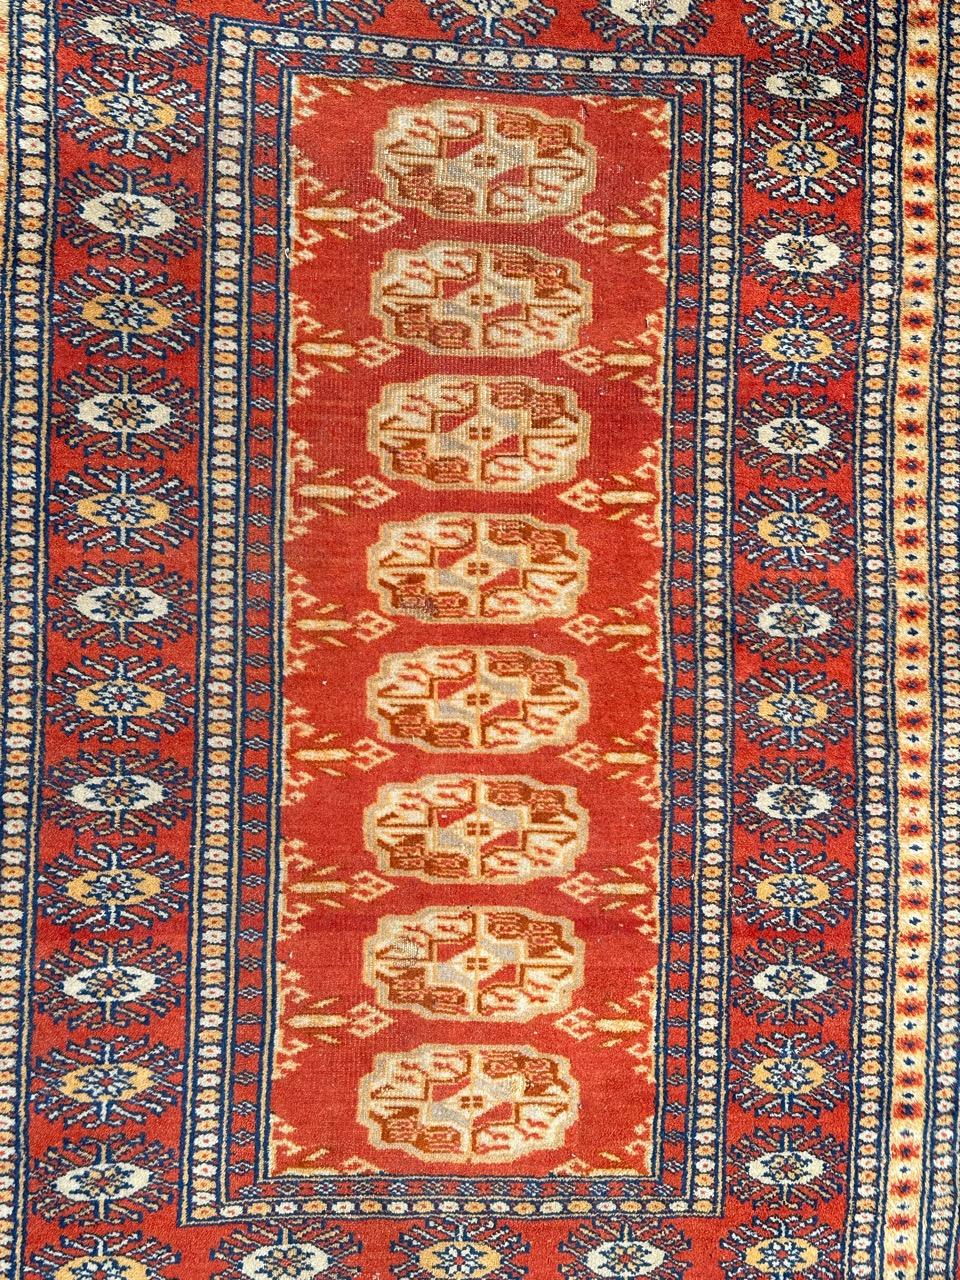 Joli petit tapis pakistanais vintage avec un joli design géométrique dans le style des tapis turkmènes de Bokhara, et de belles couleurs avec un champ orange, rouge, gris, blanc et noir, entièrement et finement noué à la main avec de la laine sur